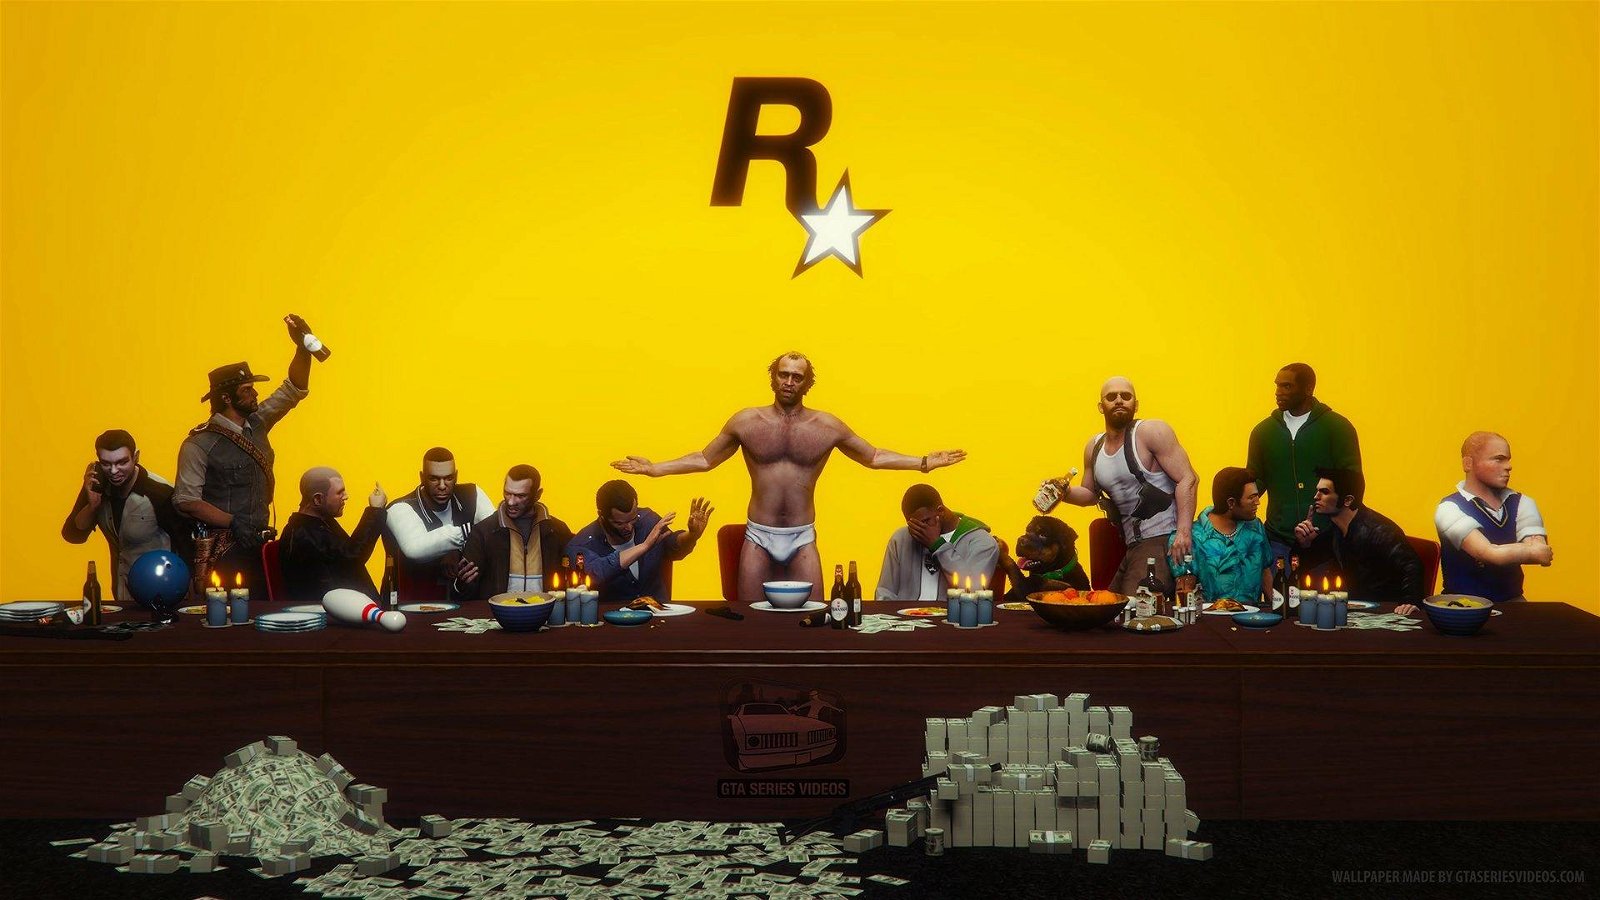 Immagine di Rockstar Games perde un pezzo: il co-fondatore Dan Houser lascia lo studio